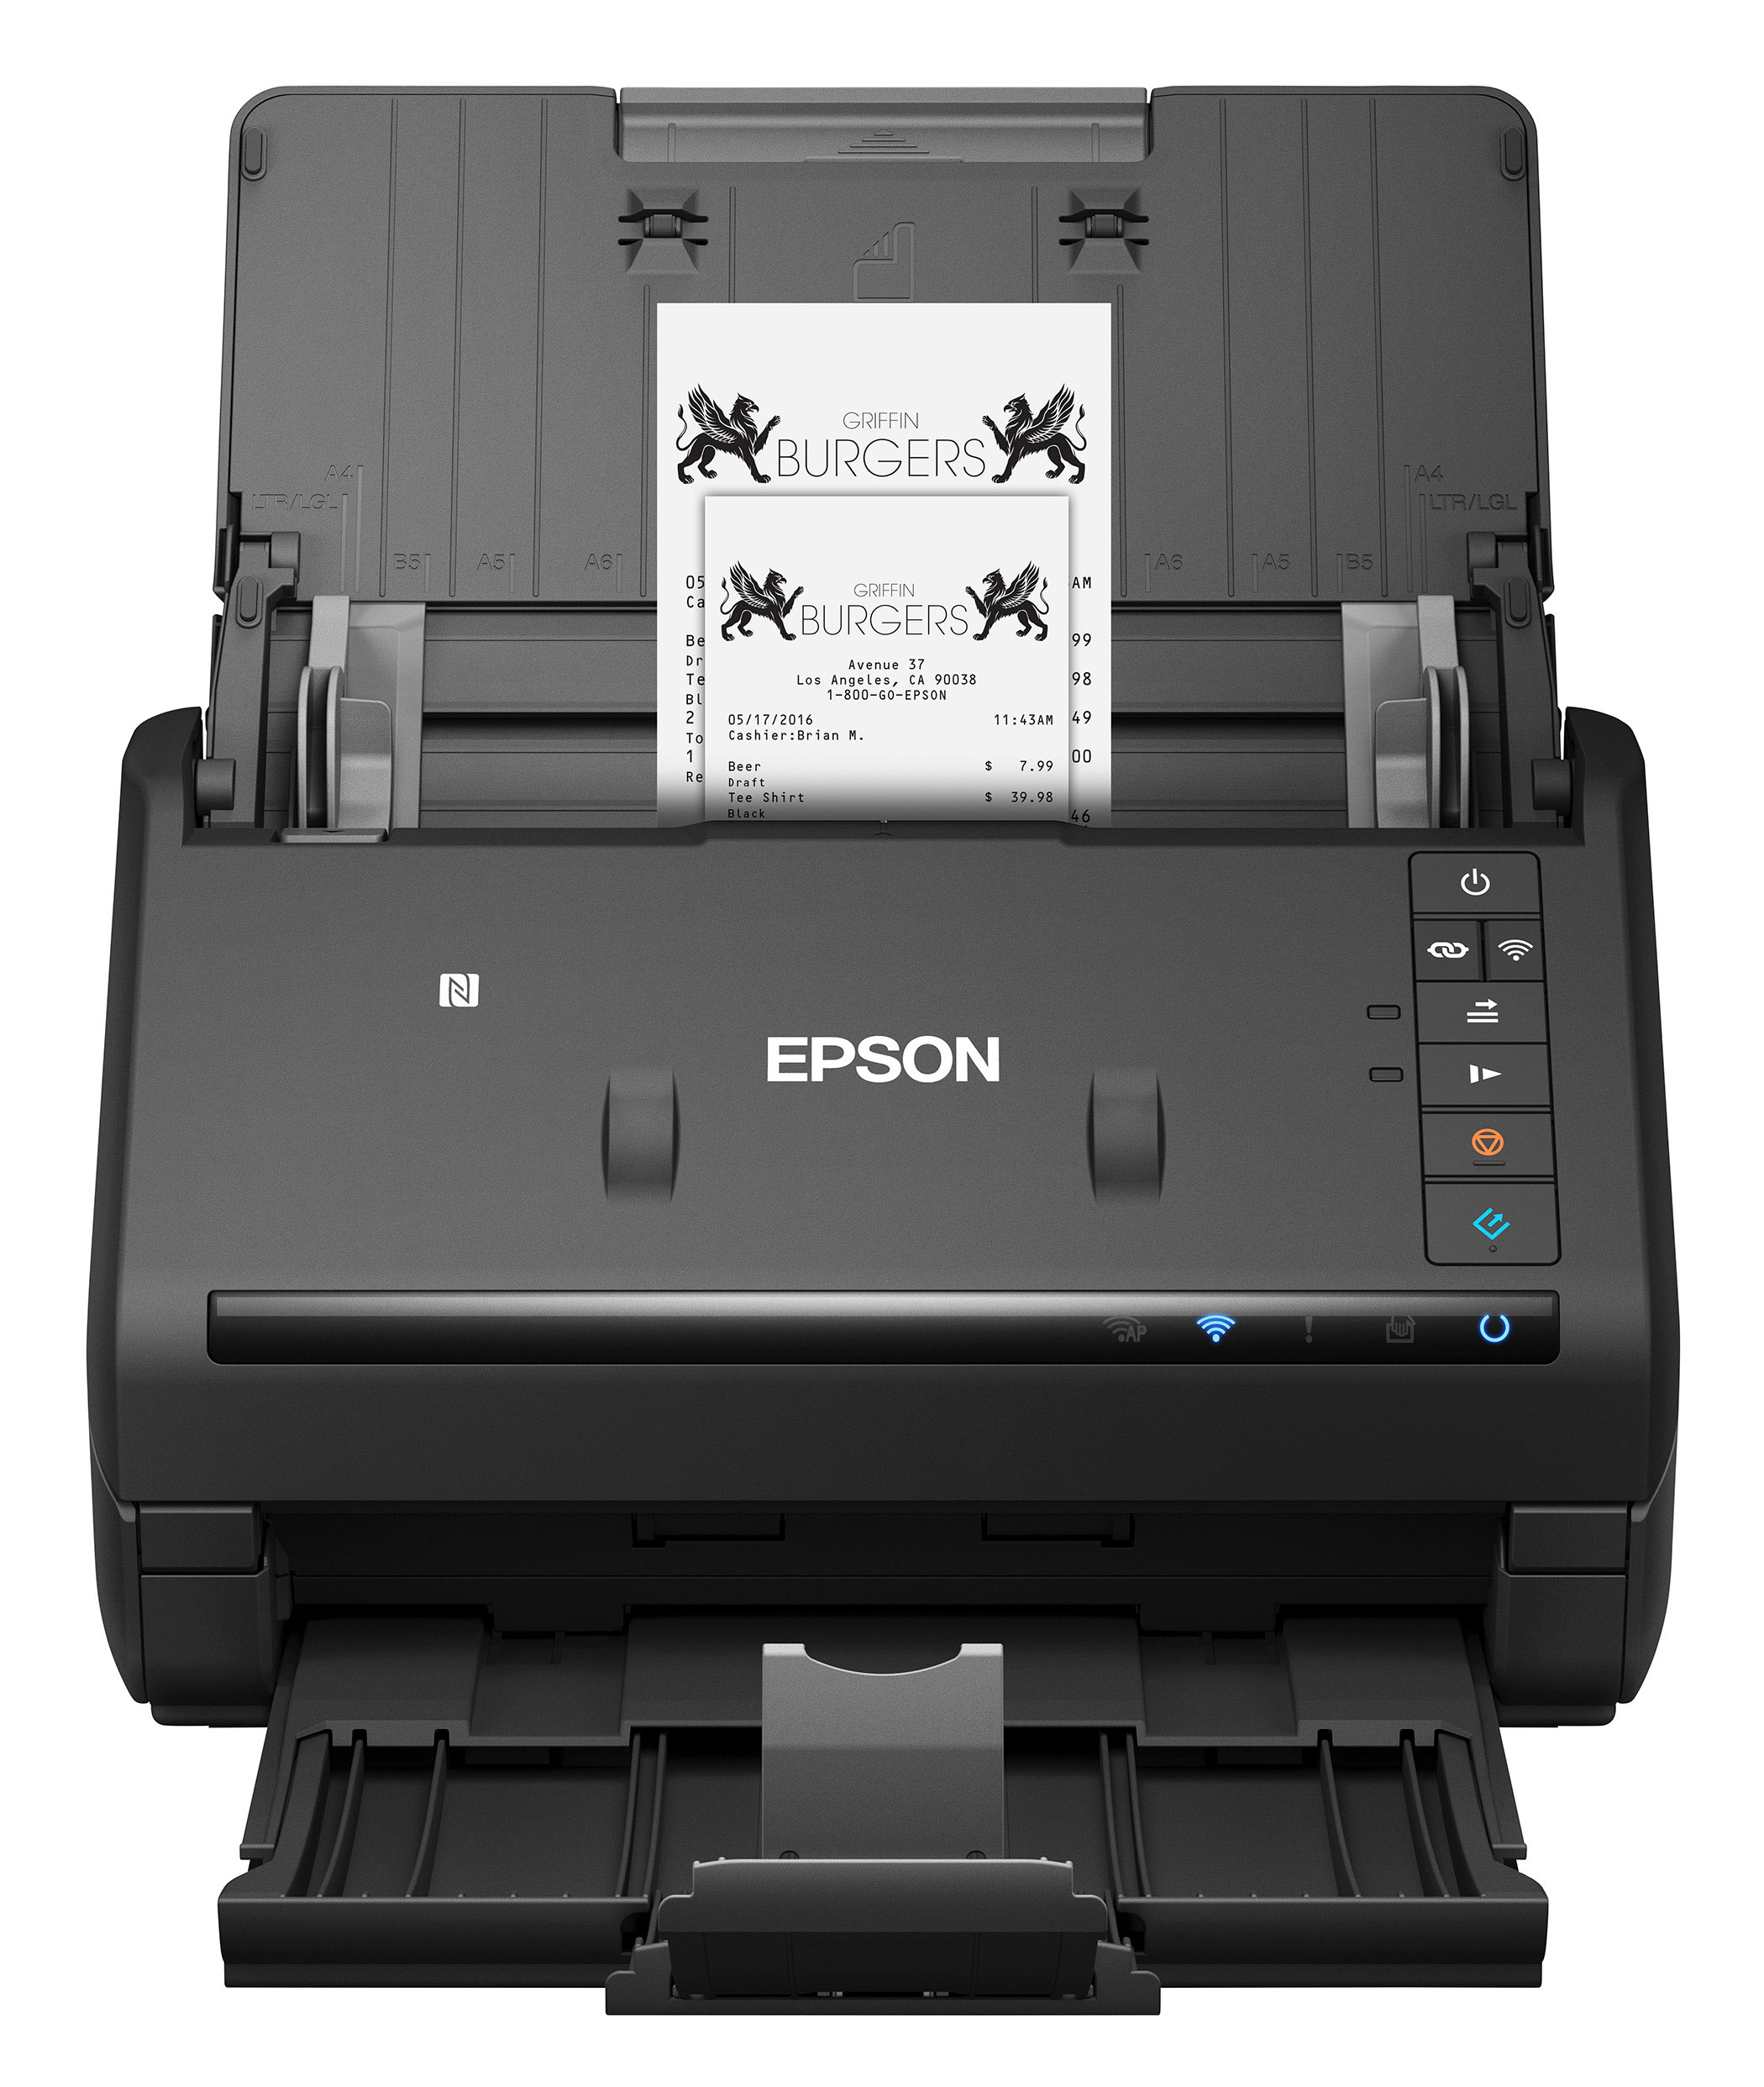 Сканер с автоподатчиком. Epson workforce es-400 II. Epson Automatic document Feeder. Epson SCANSMART. Беспроводной сканер документов.